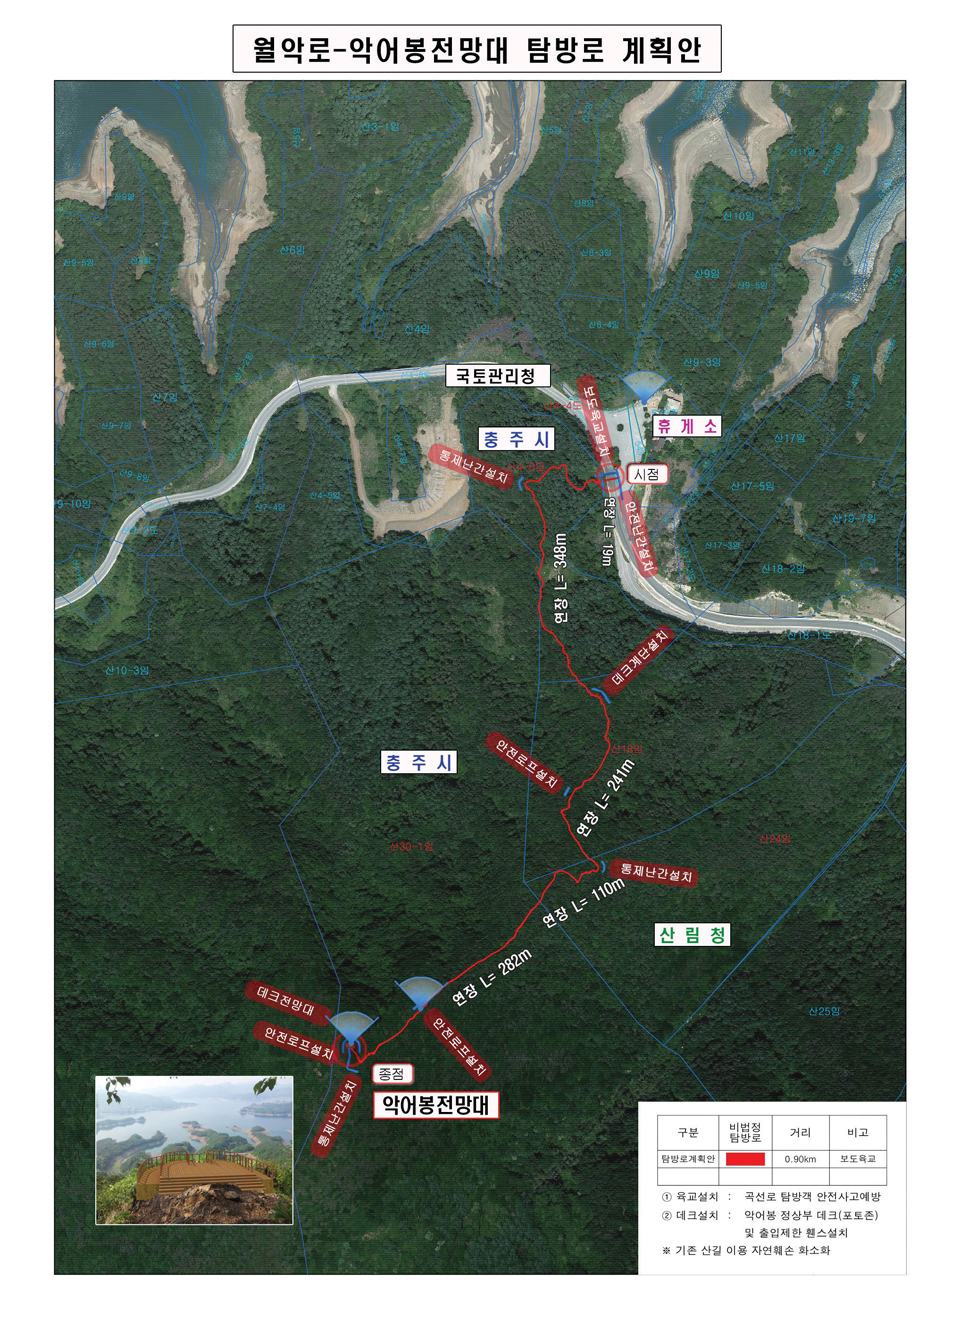 월악로-악어봉전망대 탐방로 계획안